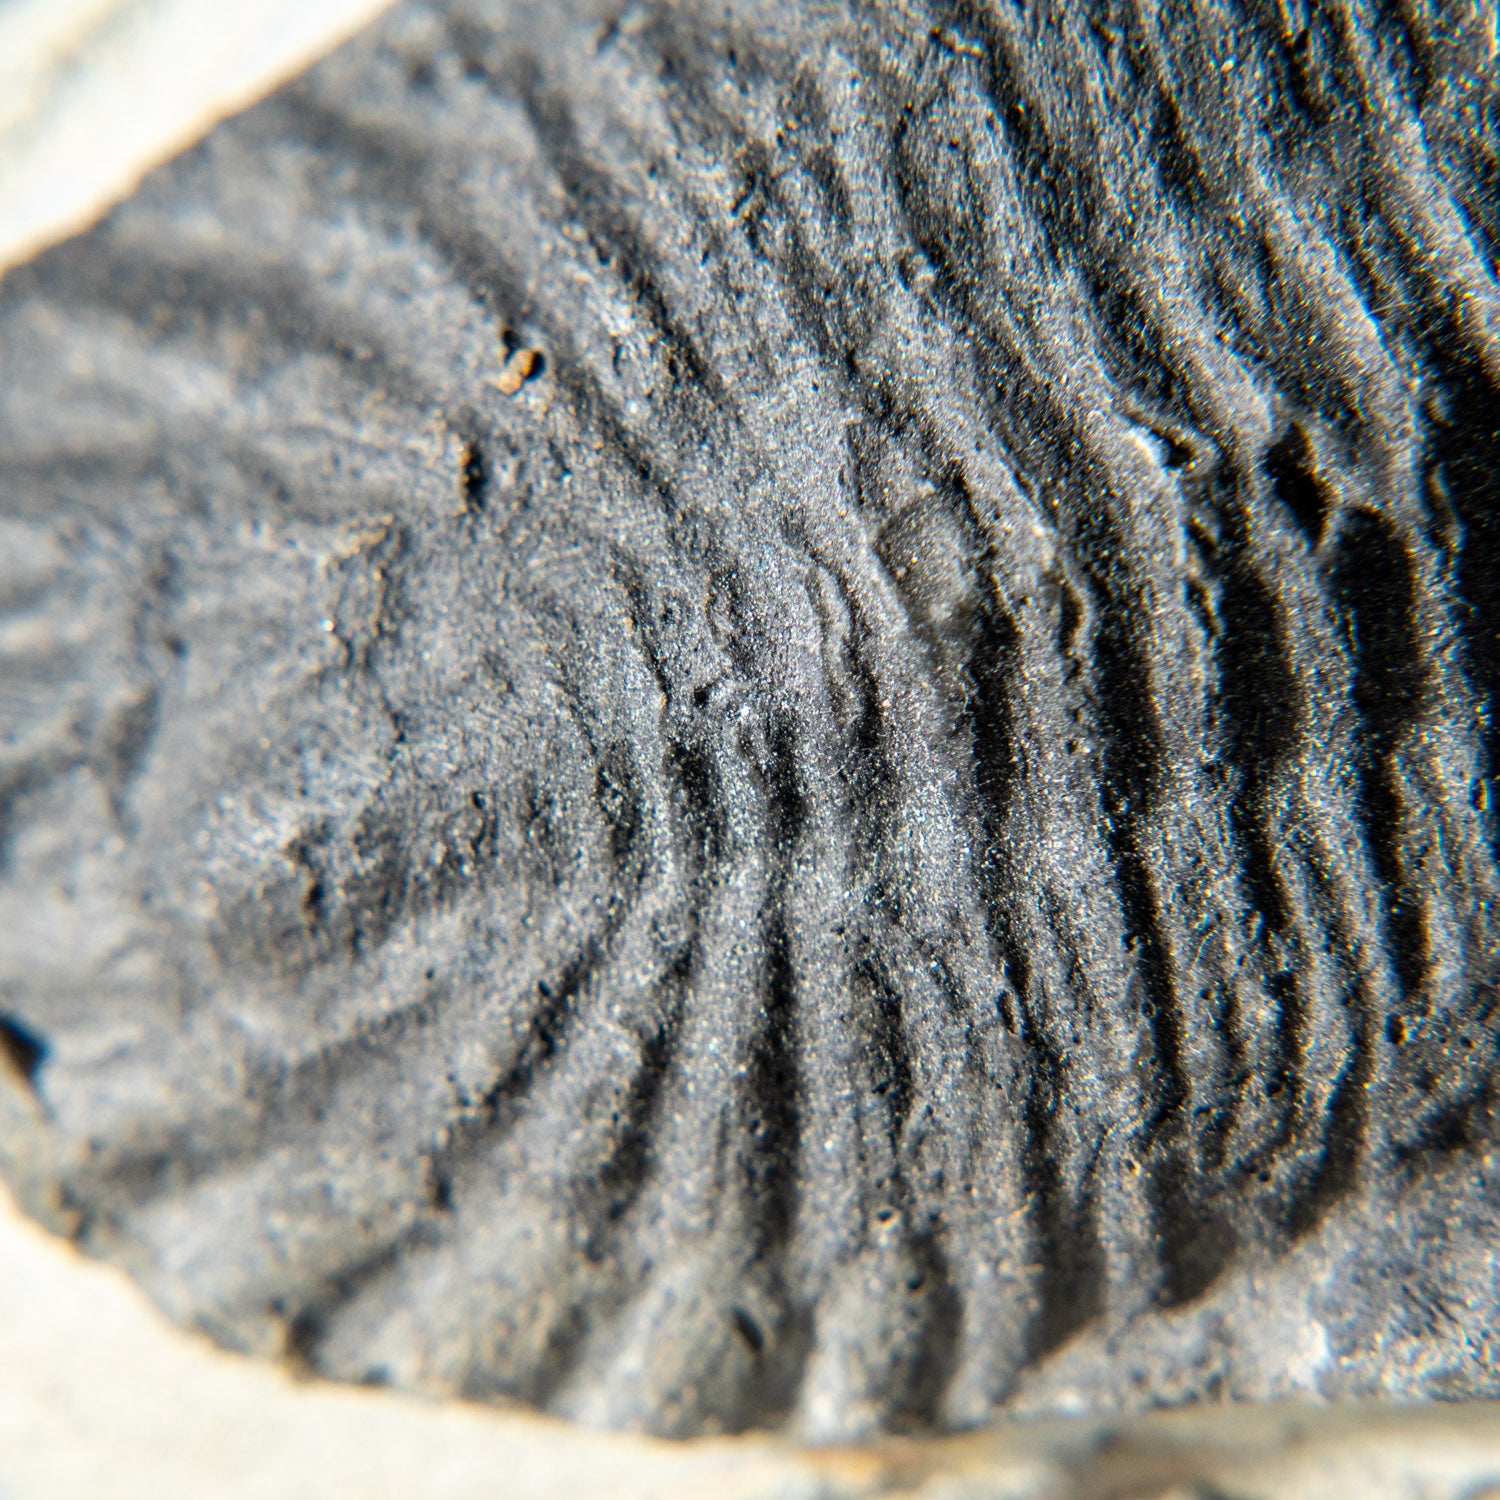 Genuine Single Metacanthina Issoumourensis Trilobite Fossil in Matrix